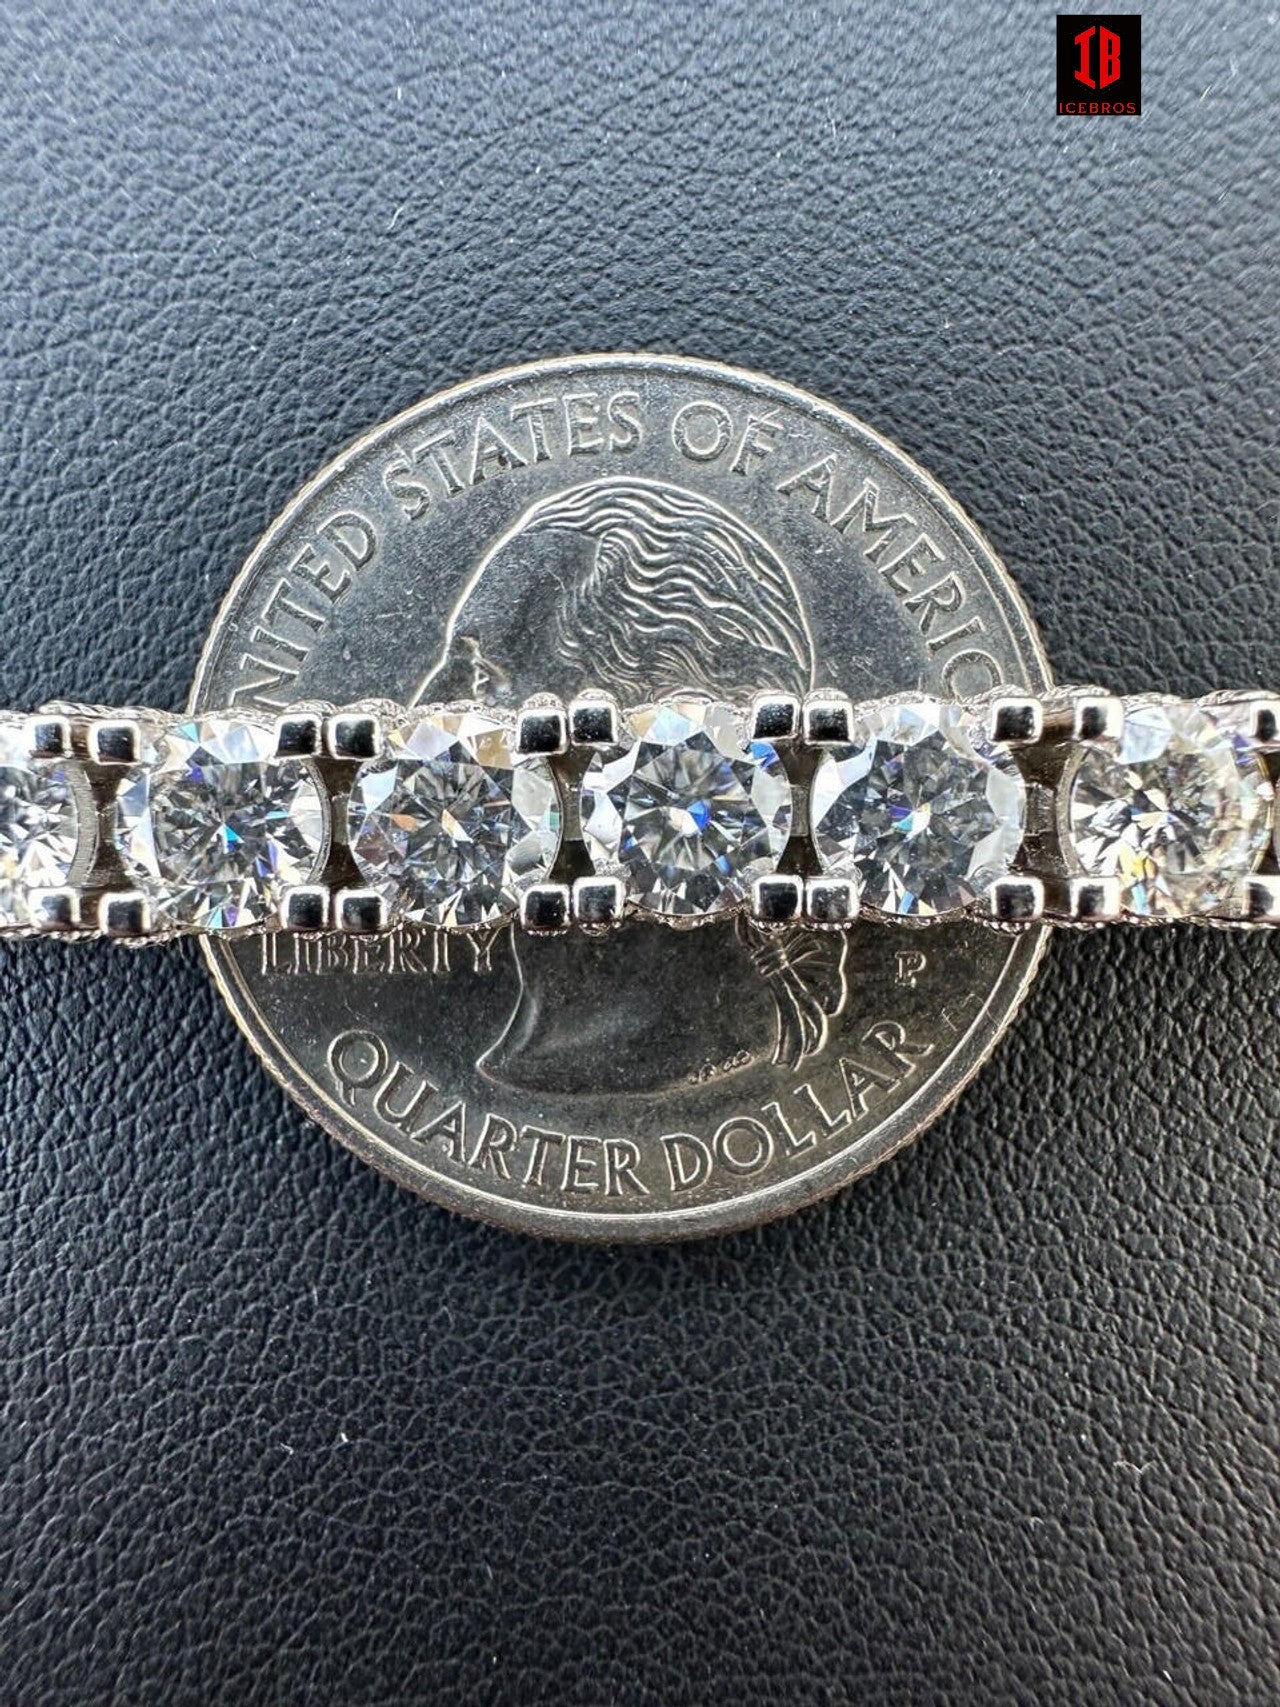 5mm 14k Gold Moissanite Diamond Tennis Bracelet 925 Sterling Silver Iced out Bracelet